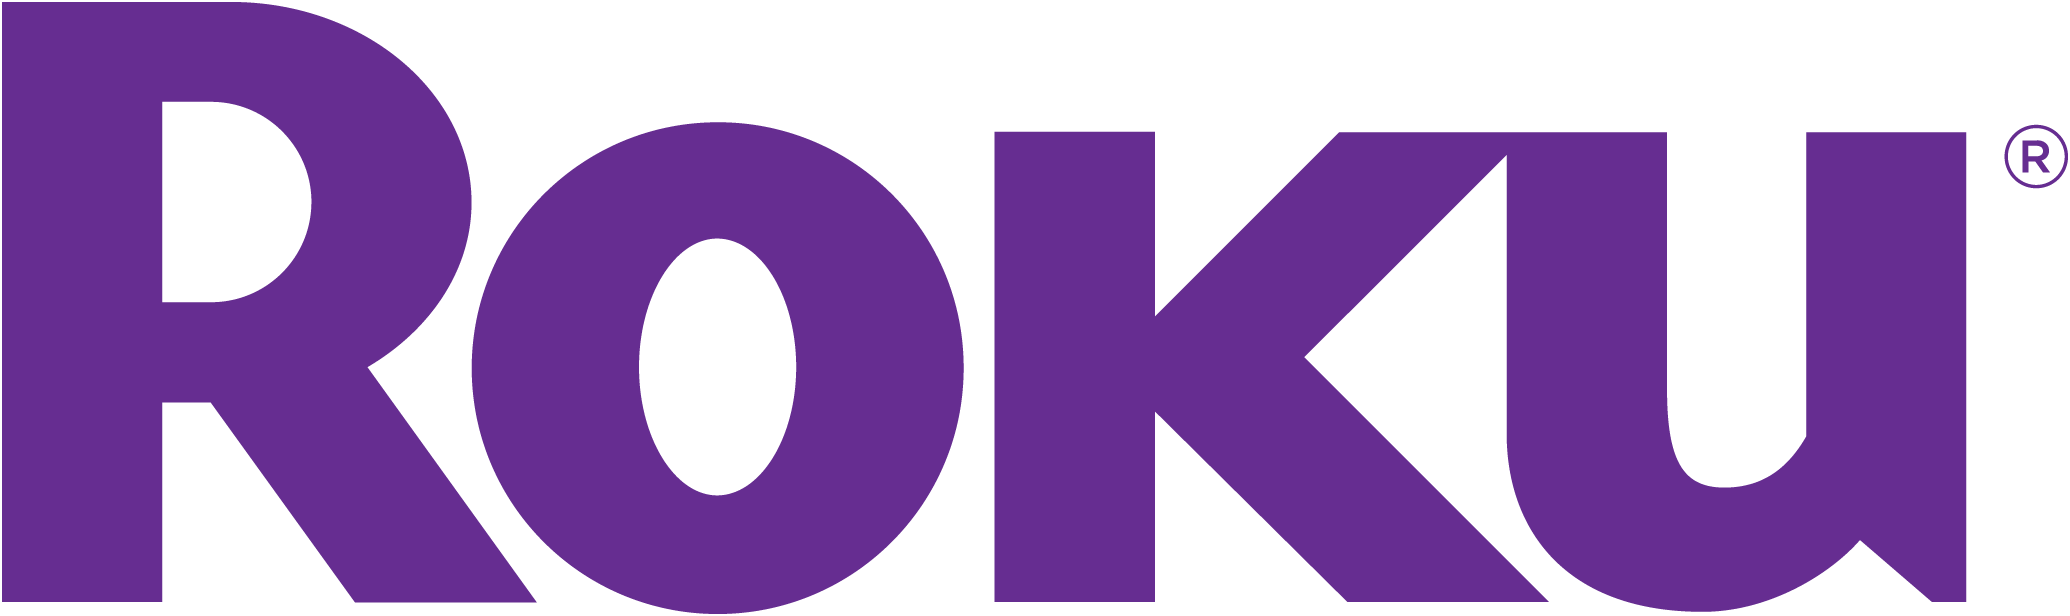 Roku_Company Logo